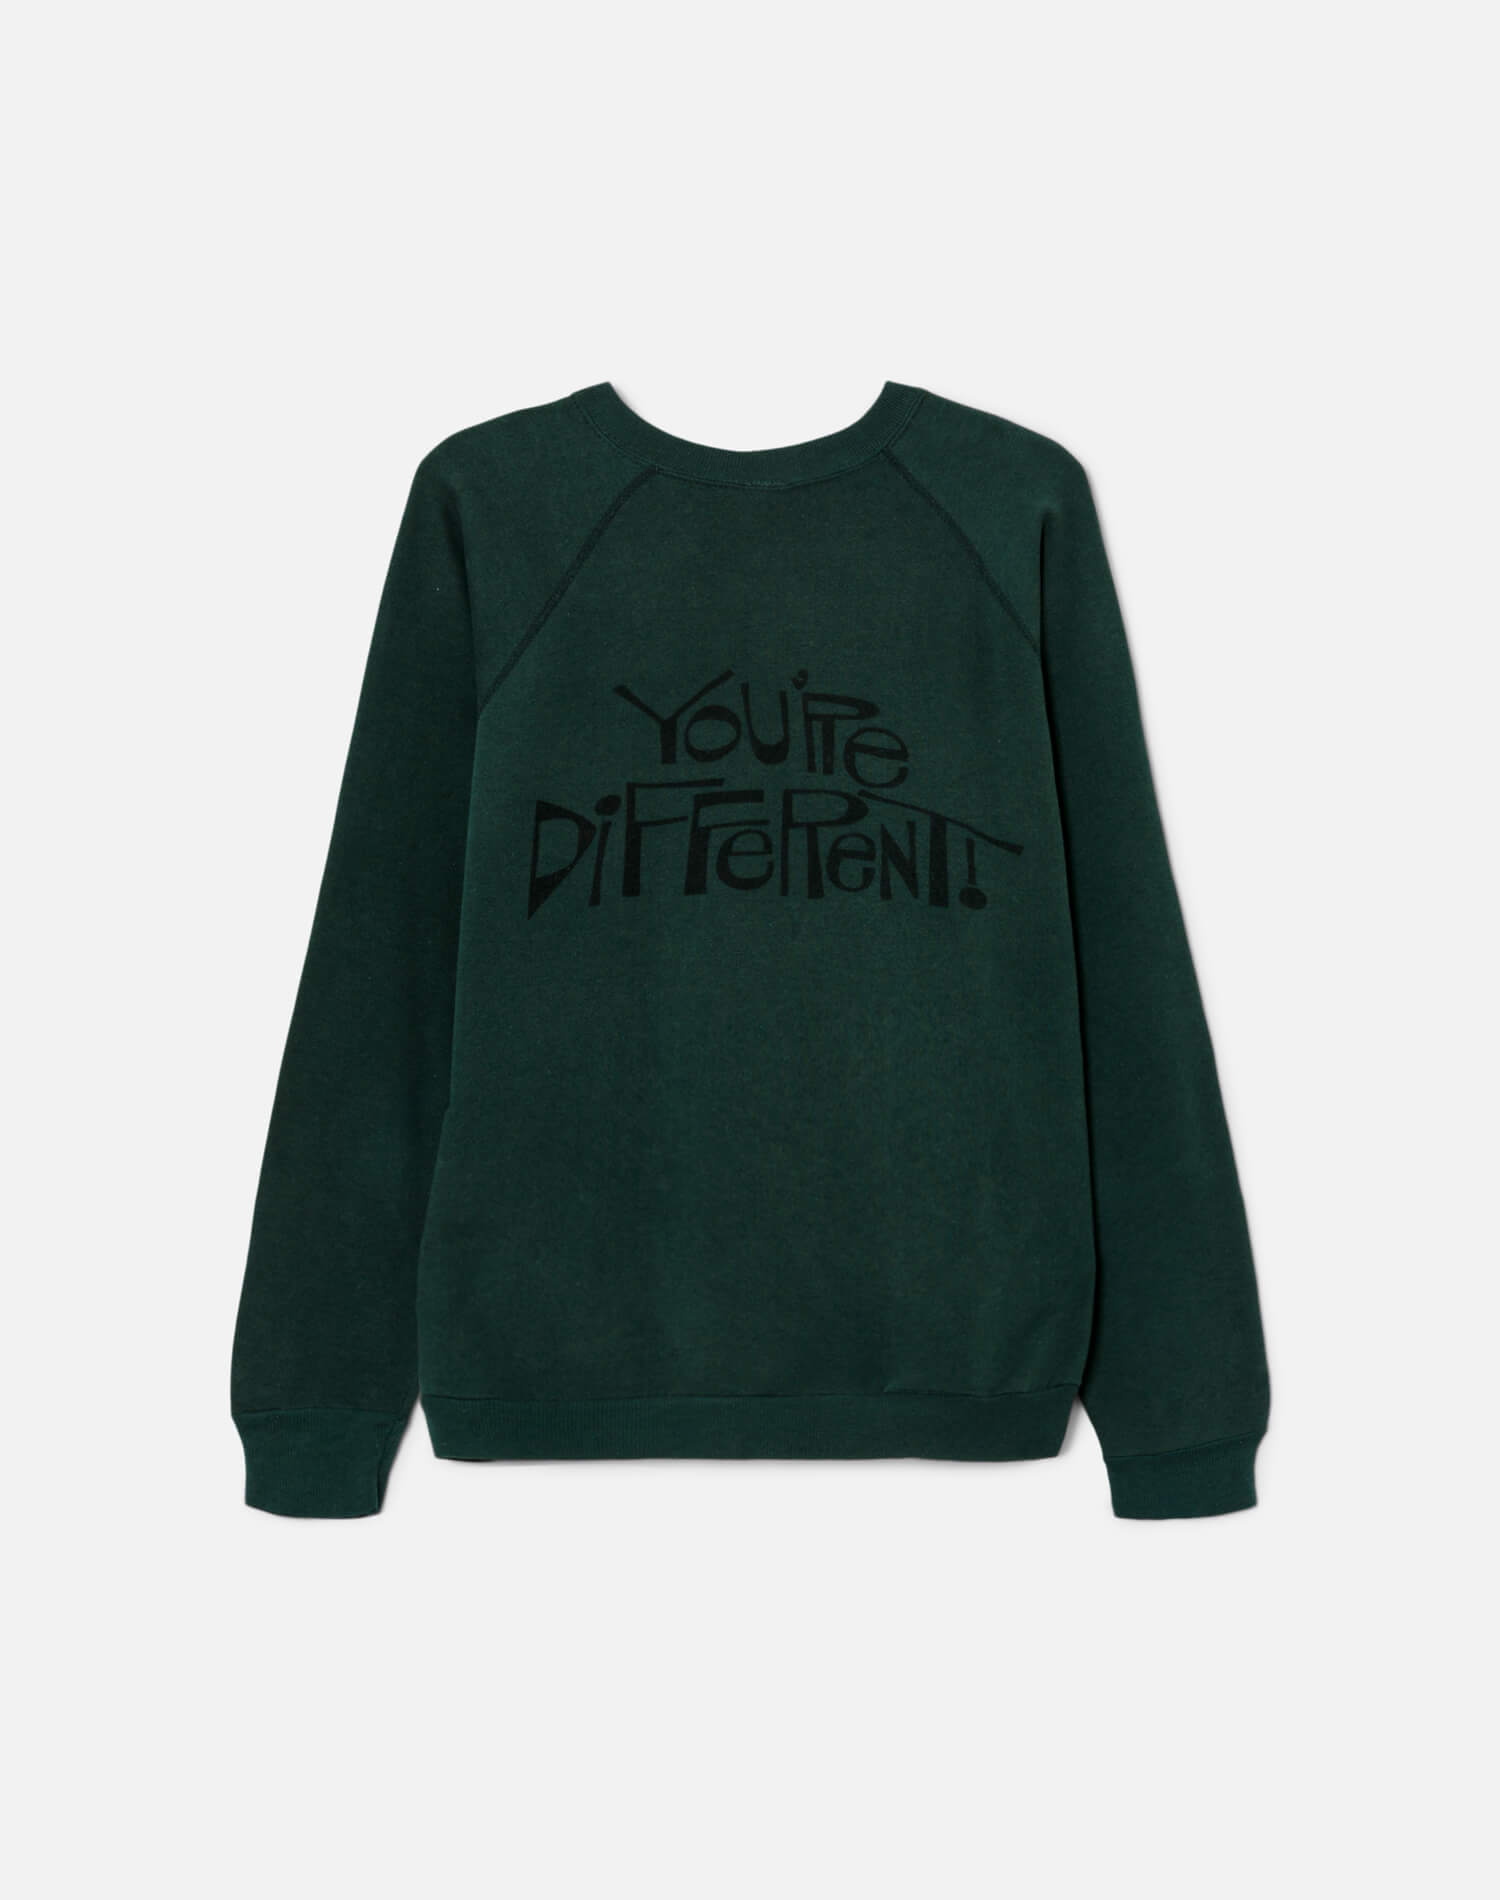 Upcycled "I Like You" Sweatshirt - Green